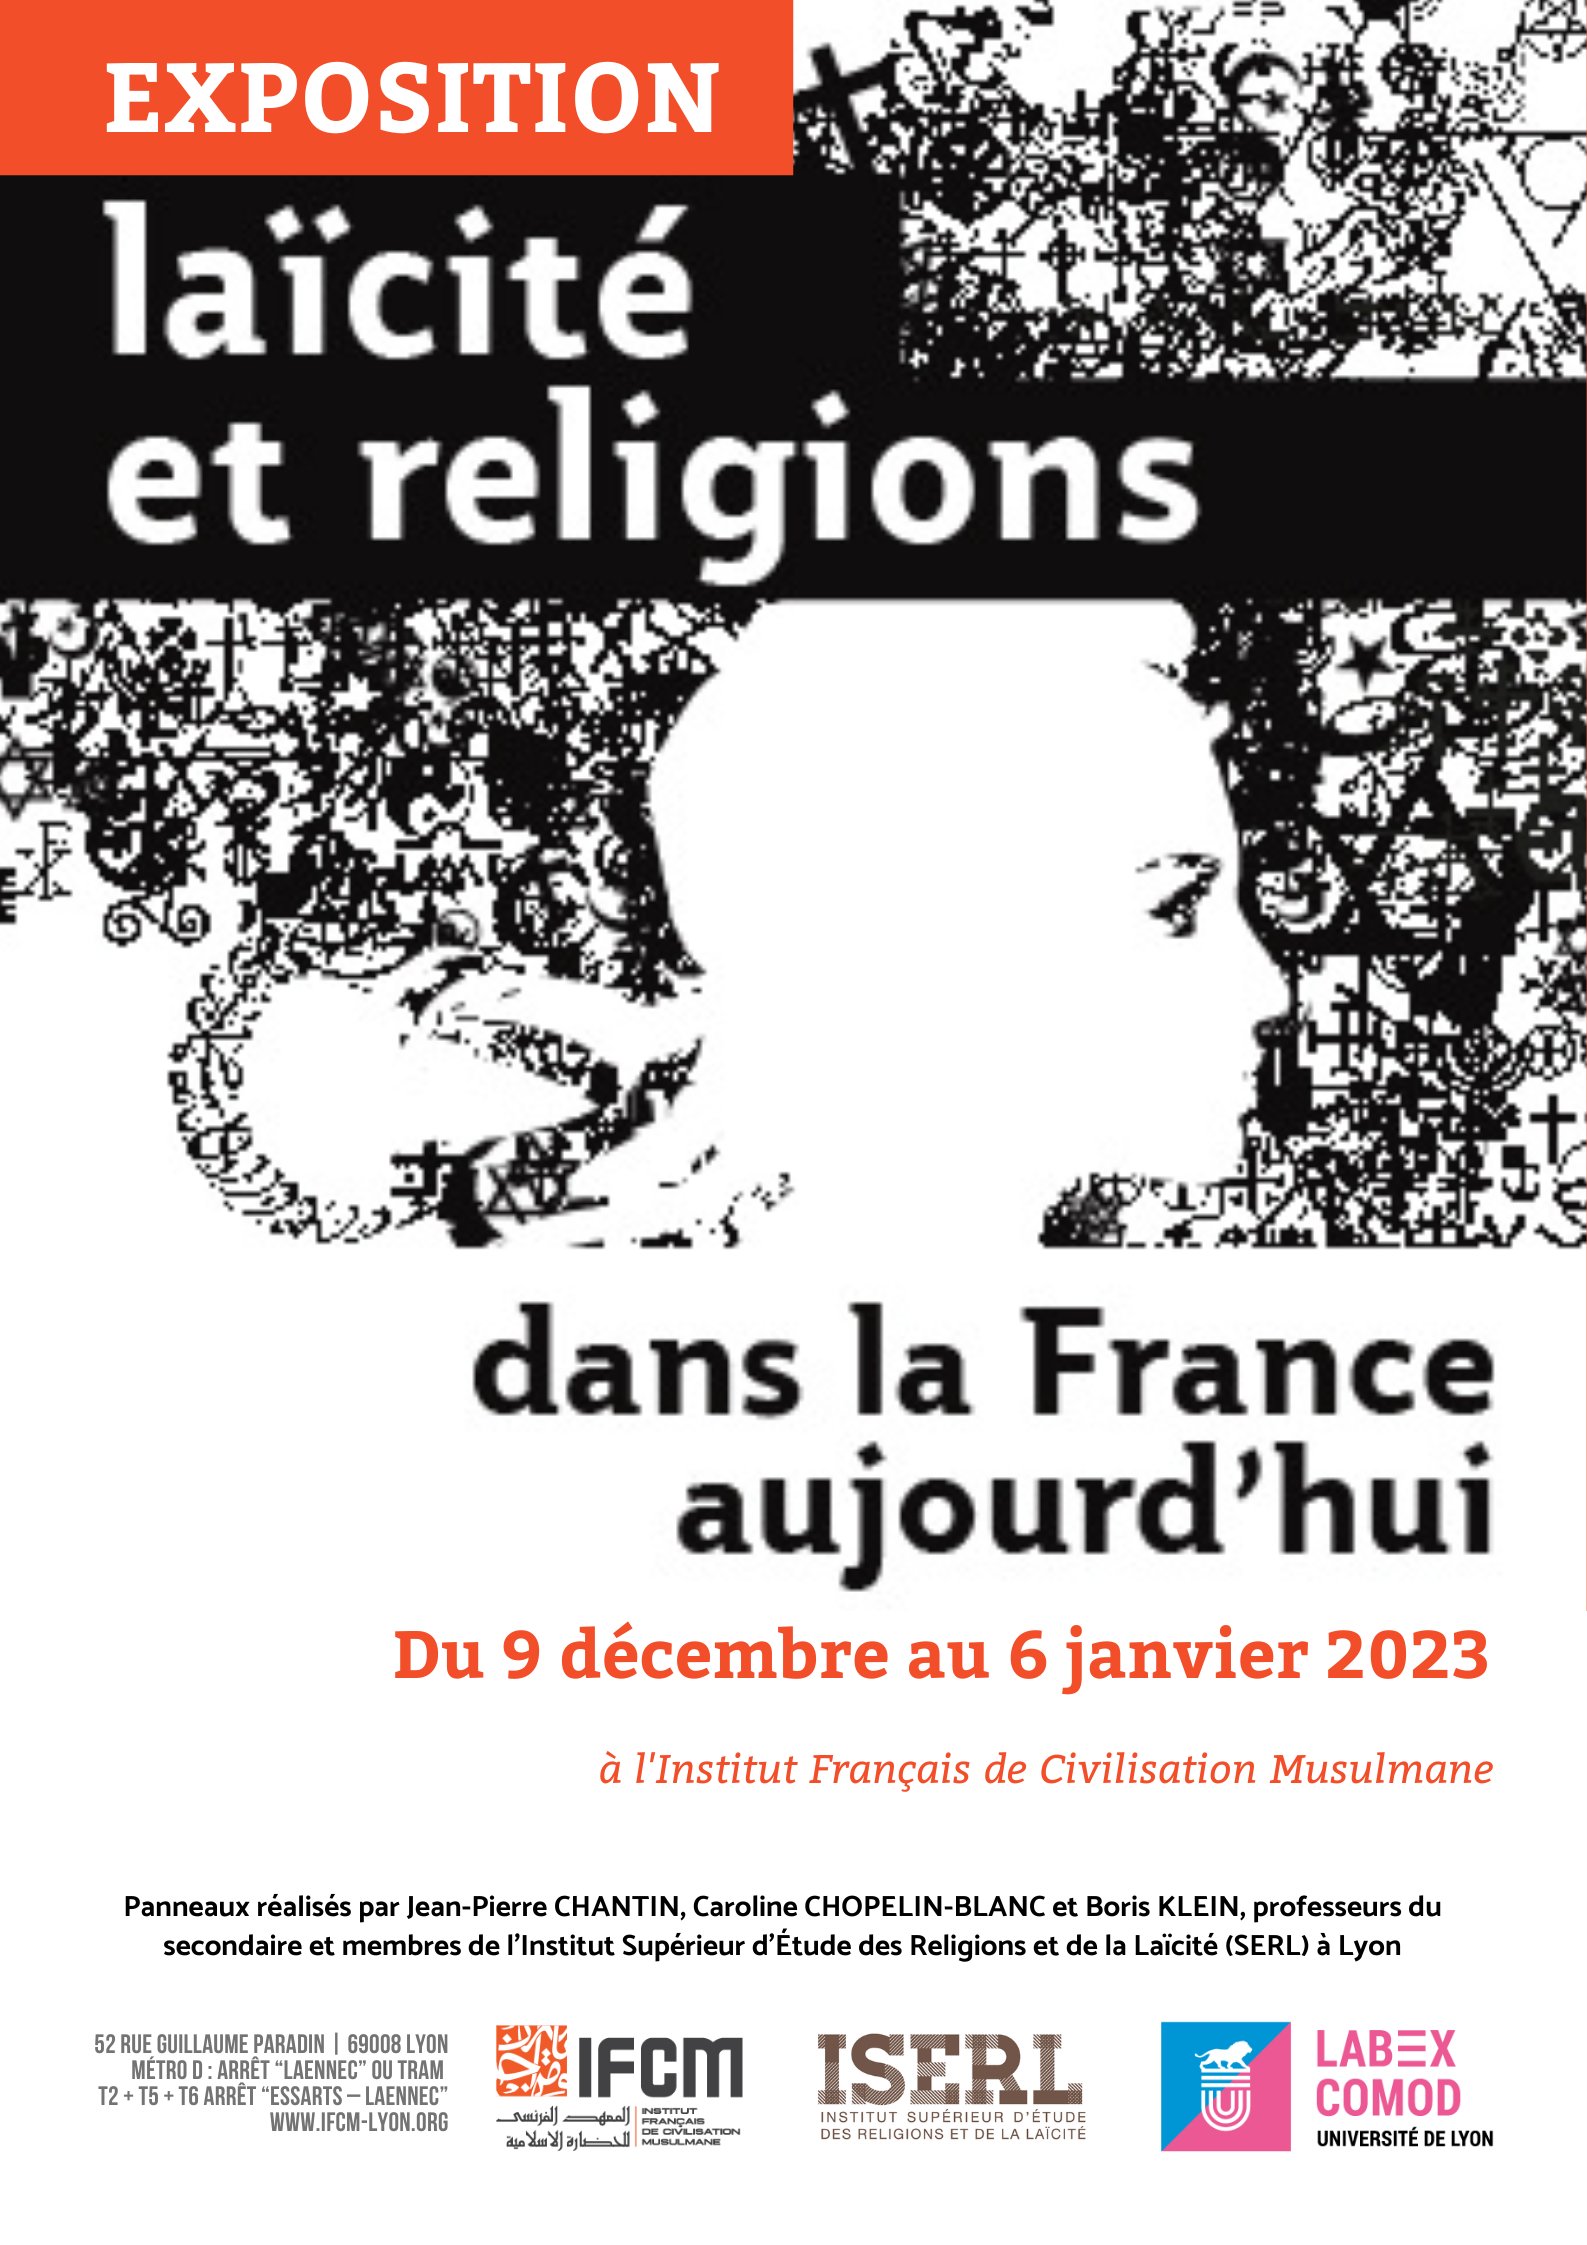 https://www.saphirnews.com/agenda/Exposition-Laicite-et-religions-dans-la-France-d-aujourd-hui_ae726374.html